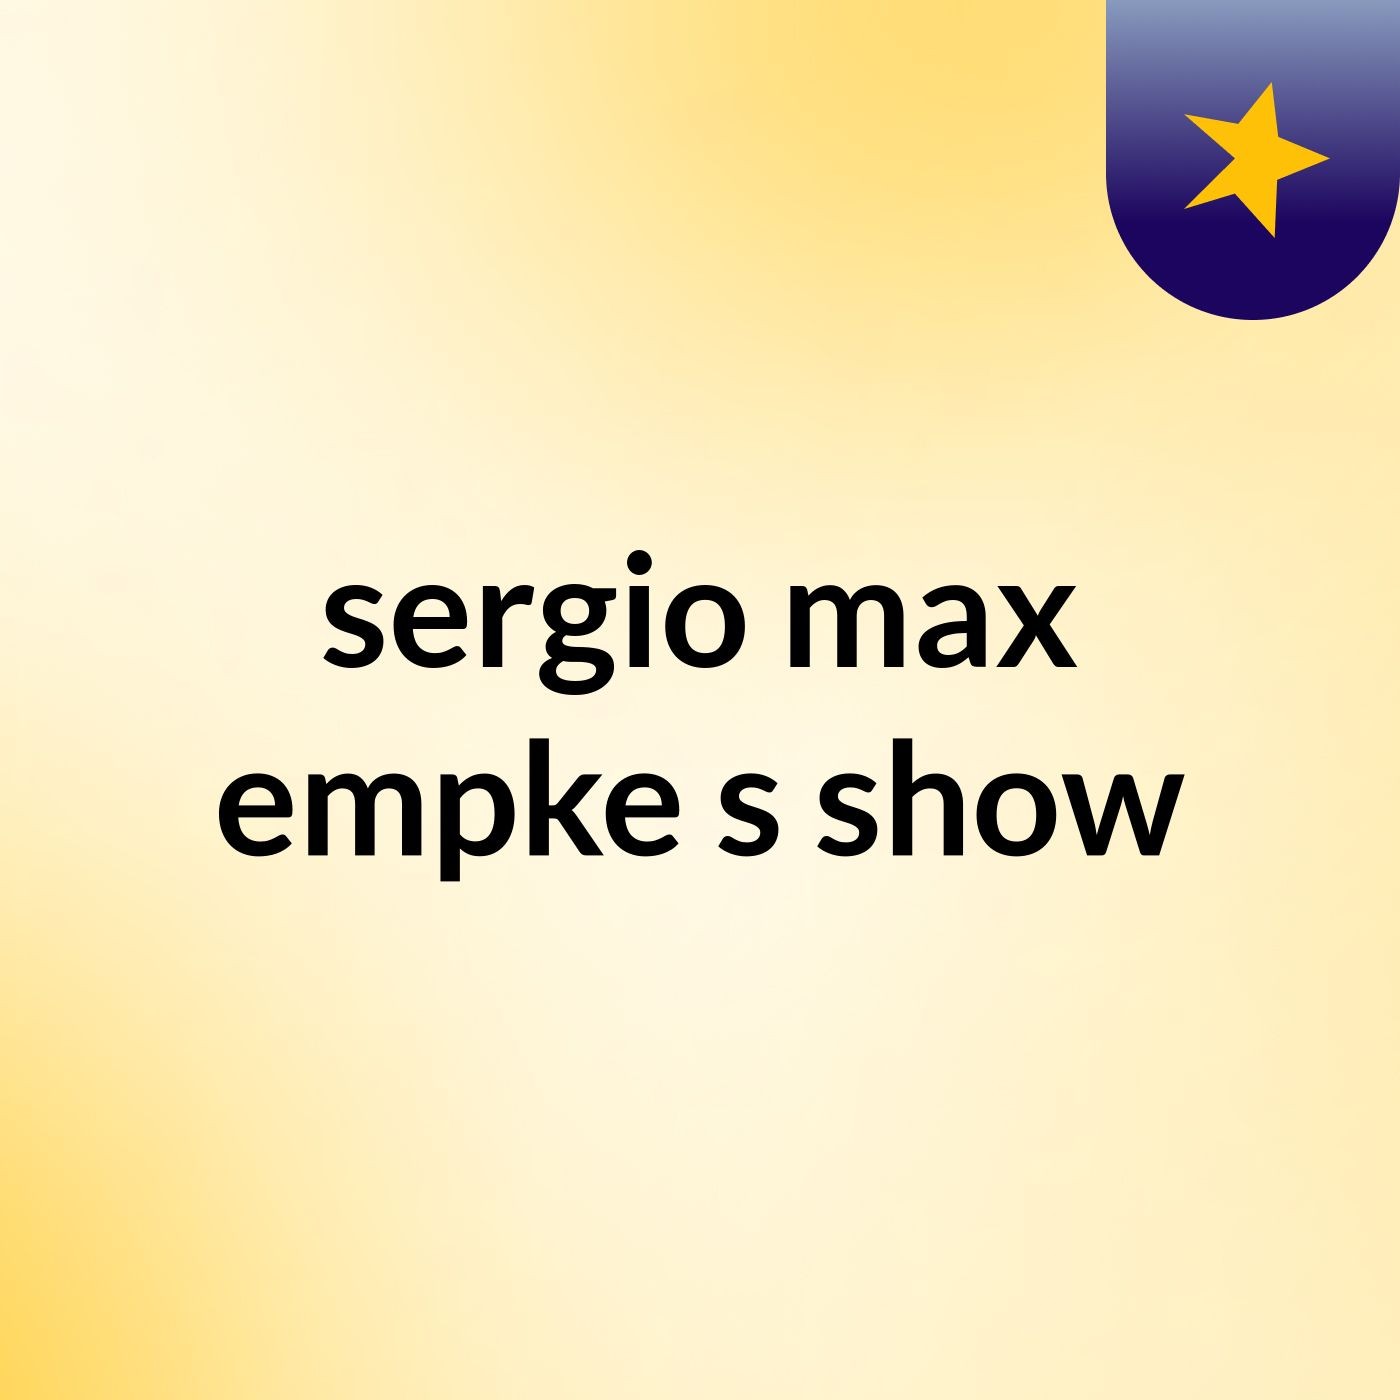 sergio max empke's show